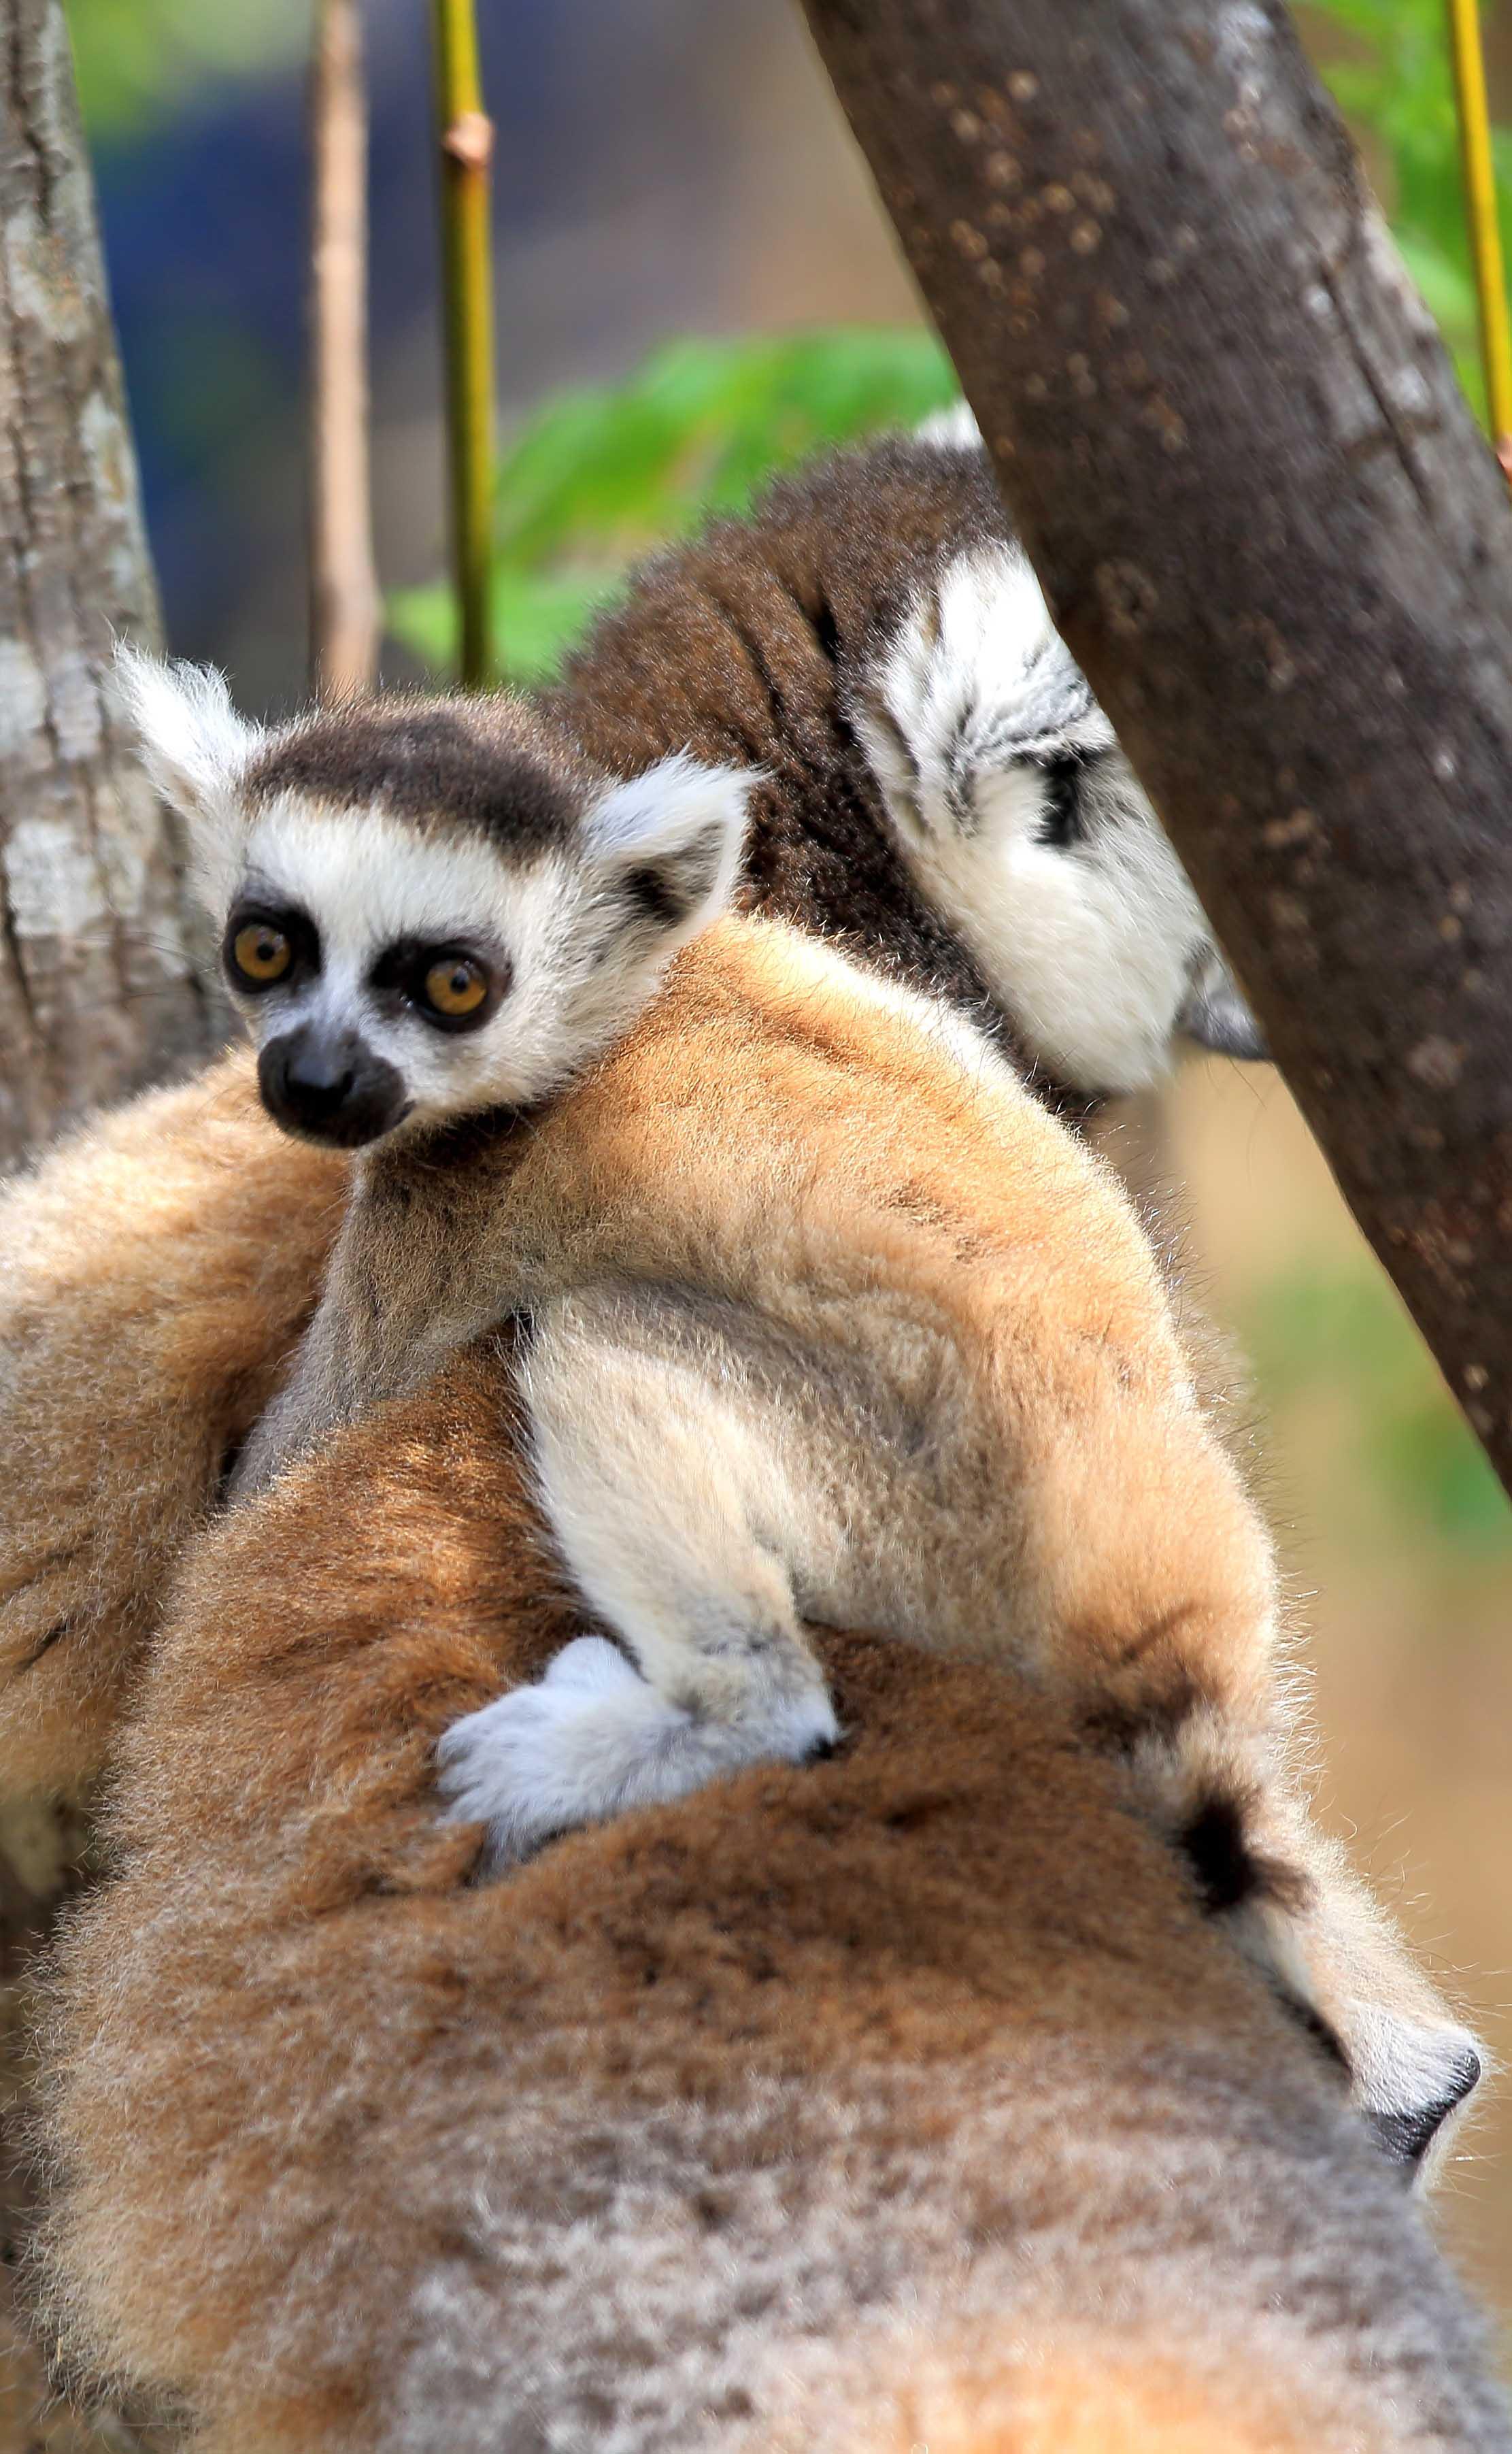 马达加斯加动物名字图片